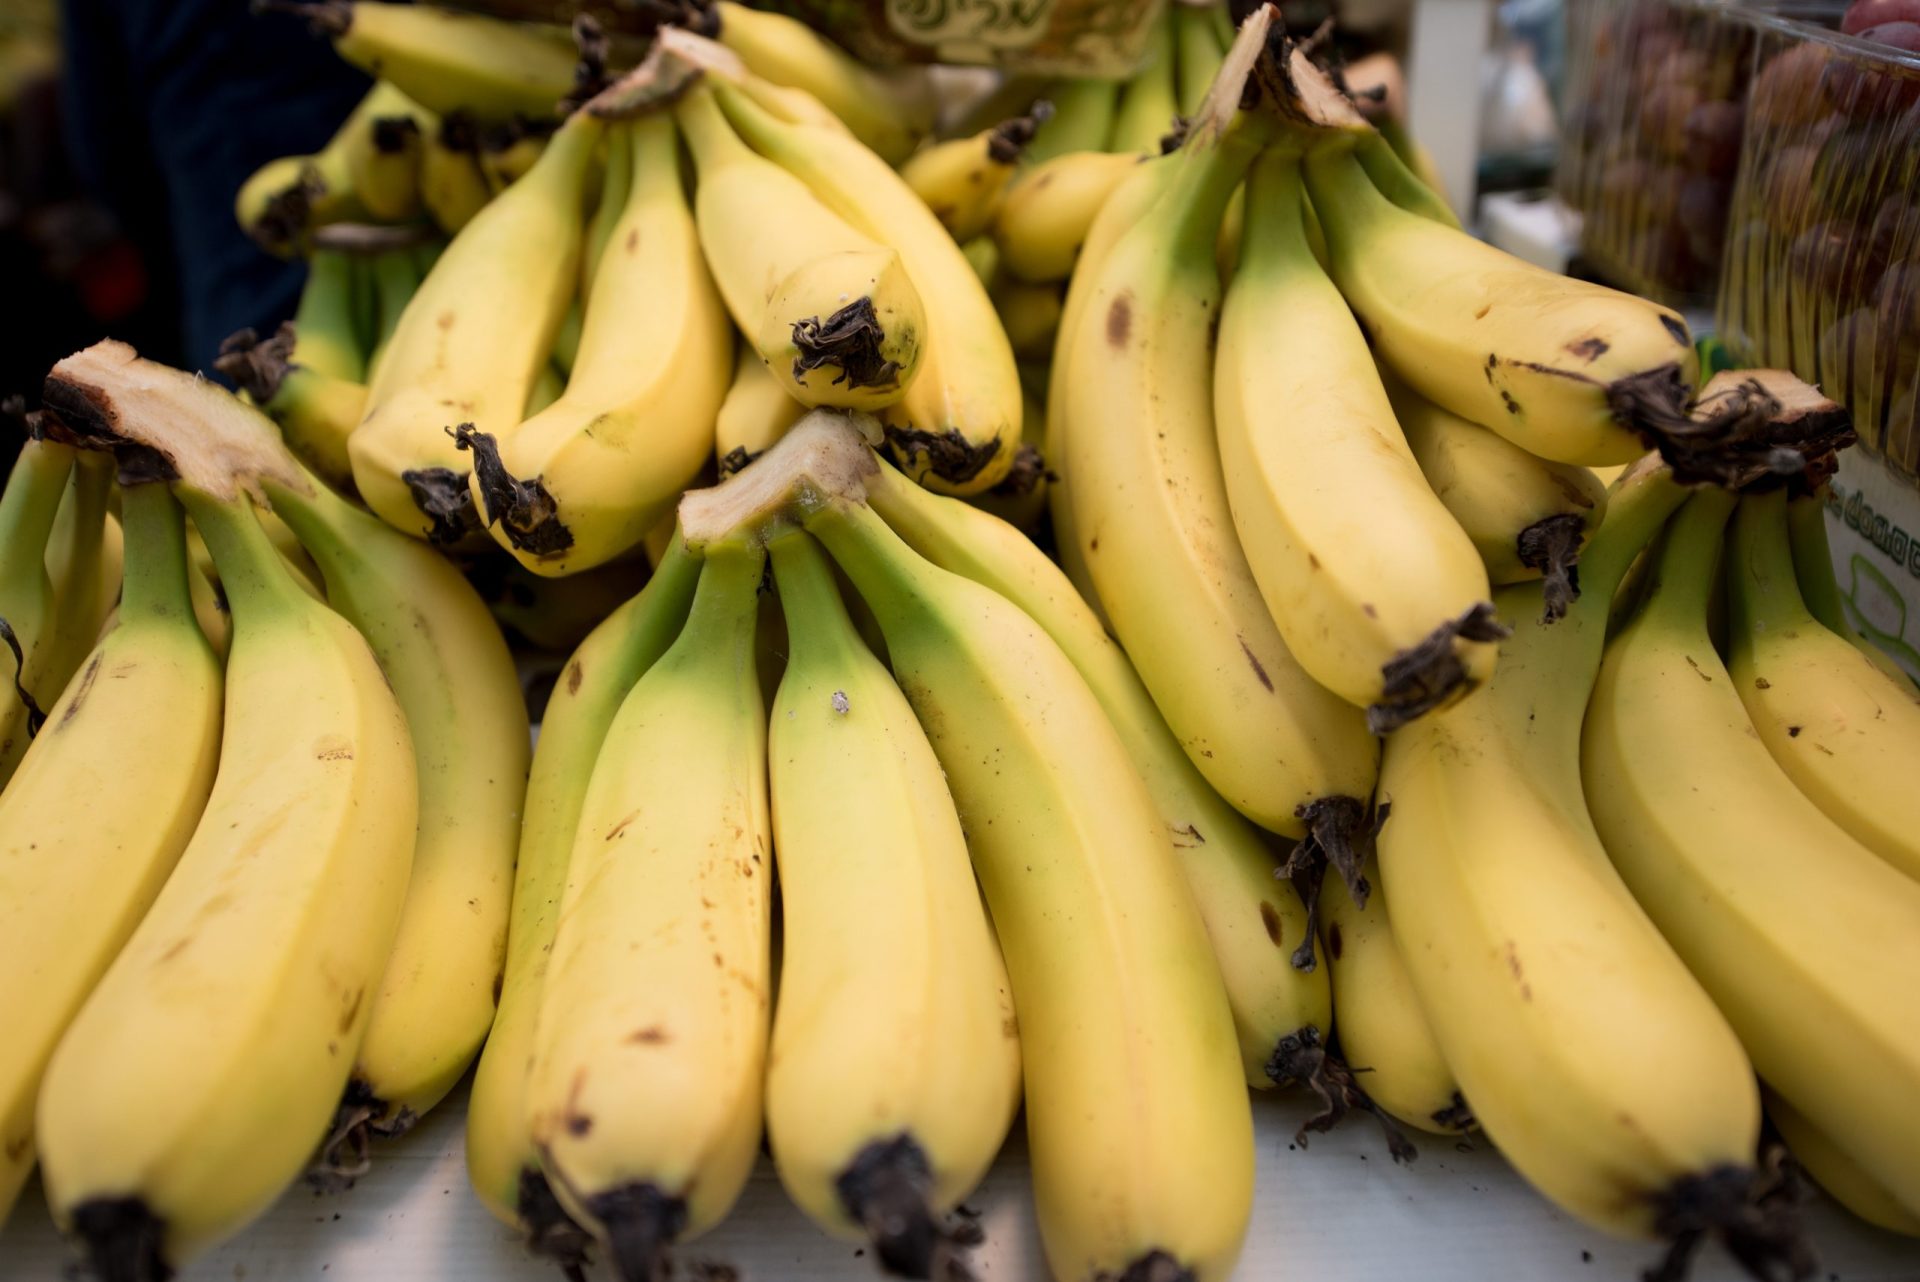 PJ apreende mais de 8 toneladas de cocaína escondida em contentores de bananas em Setúbal